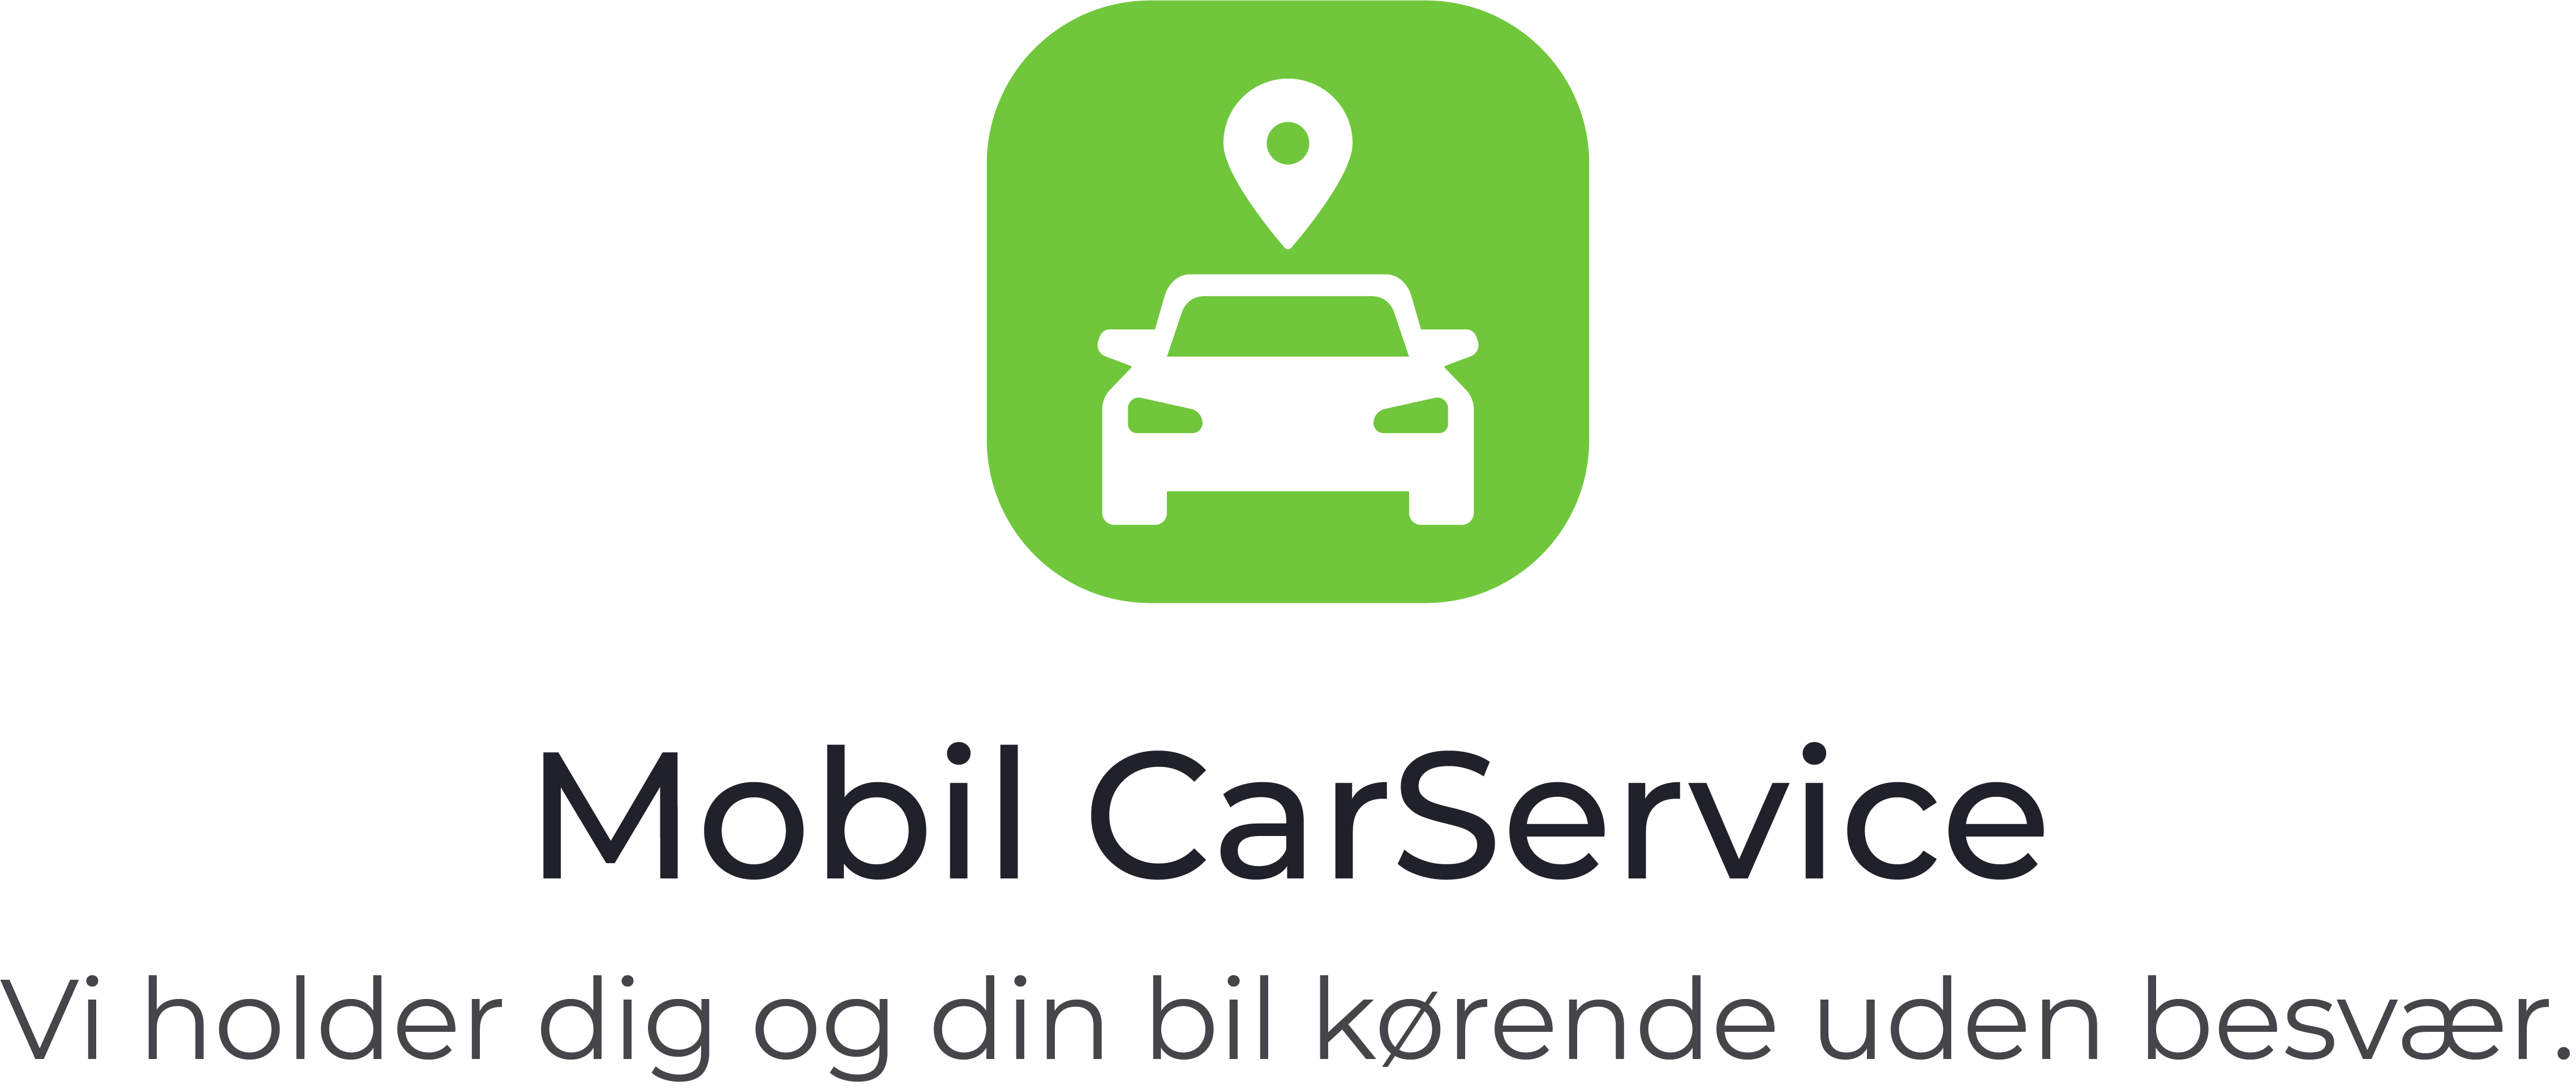 Mobil CarService - Udekørende værksted logo